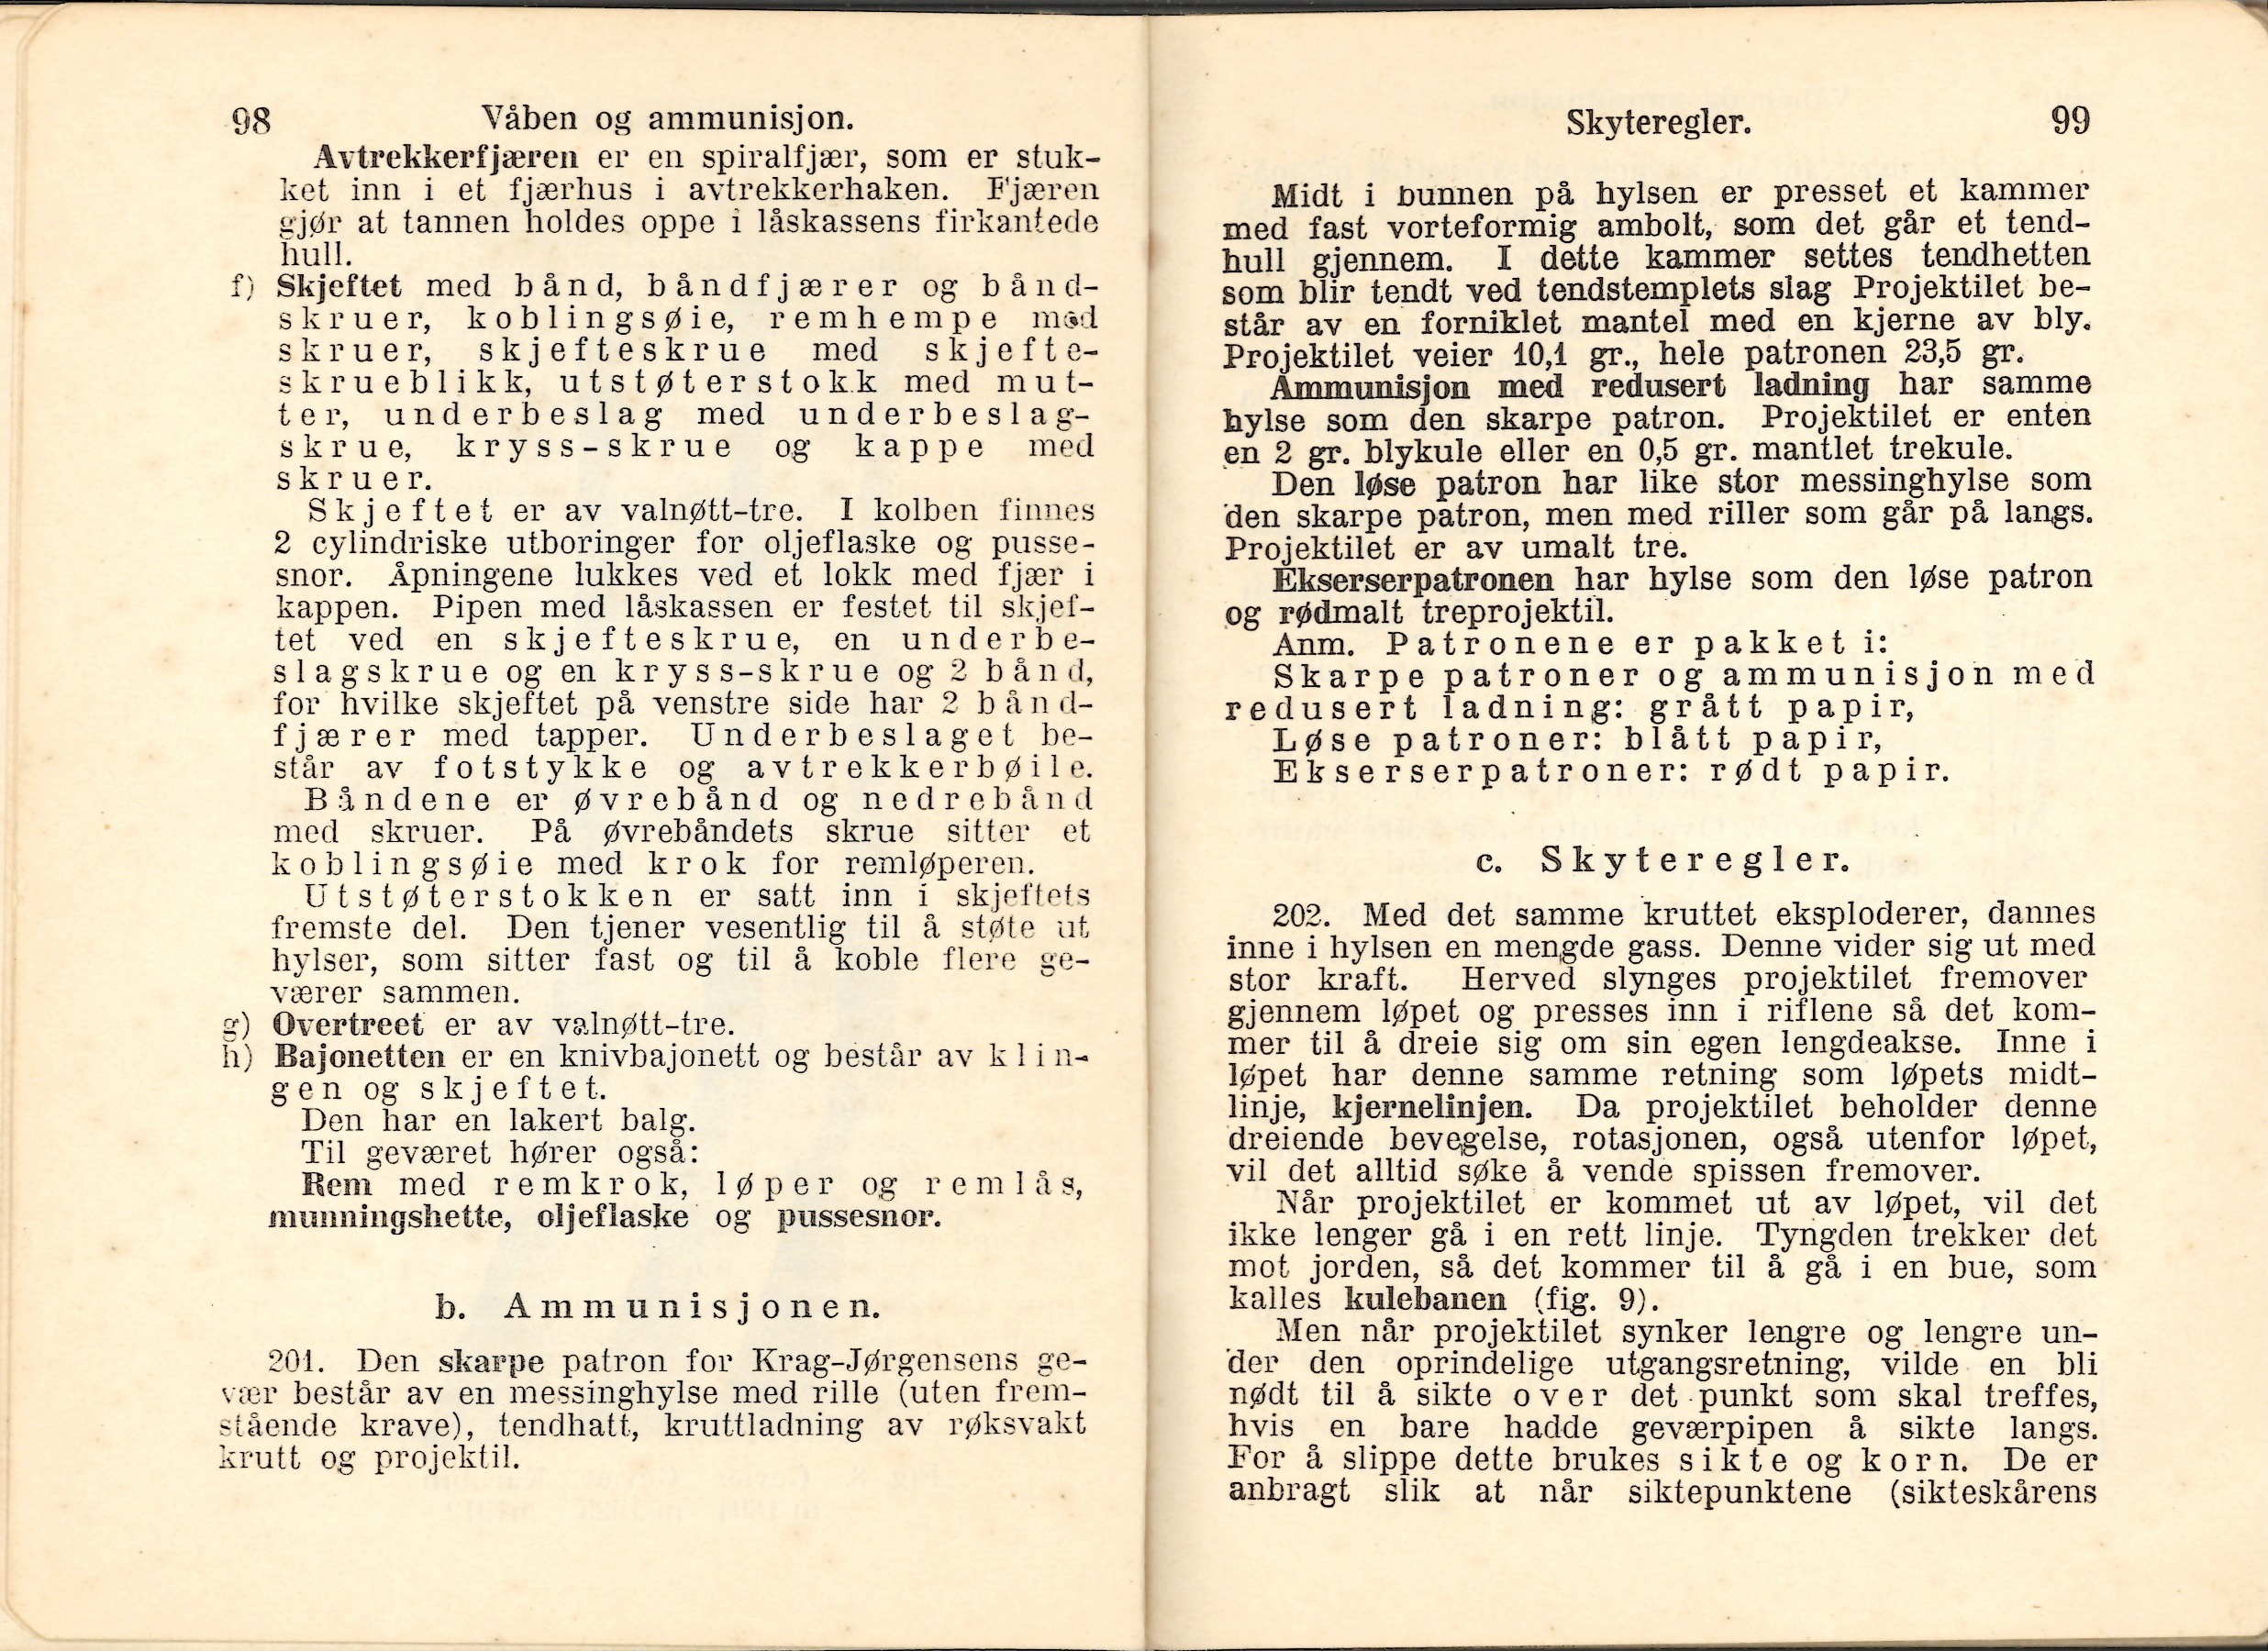 ./doc/reglement/Haandbok1925/Haandbok-for-infanteristen-1925-10.jpg